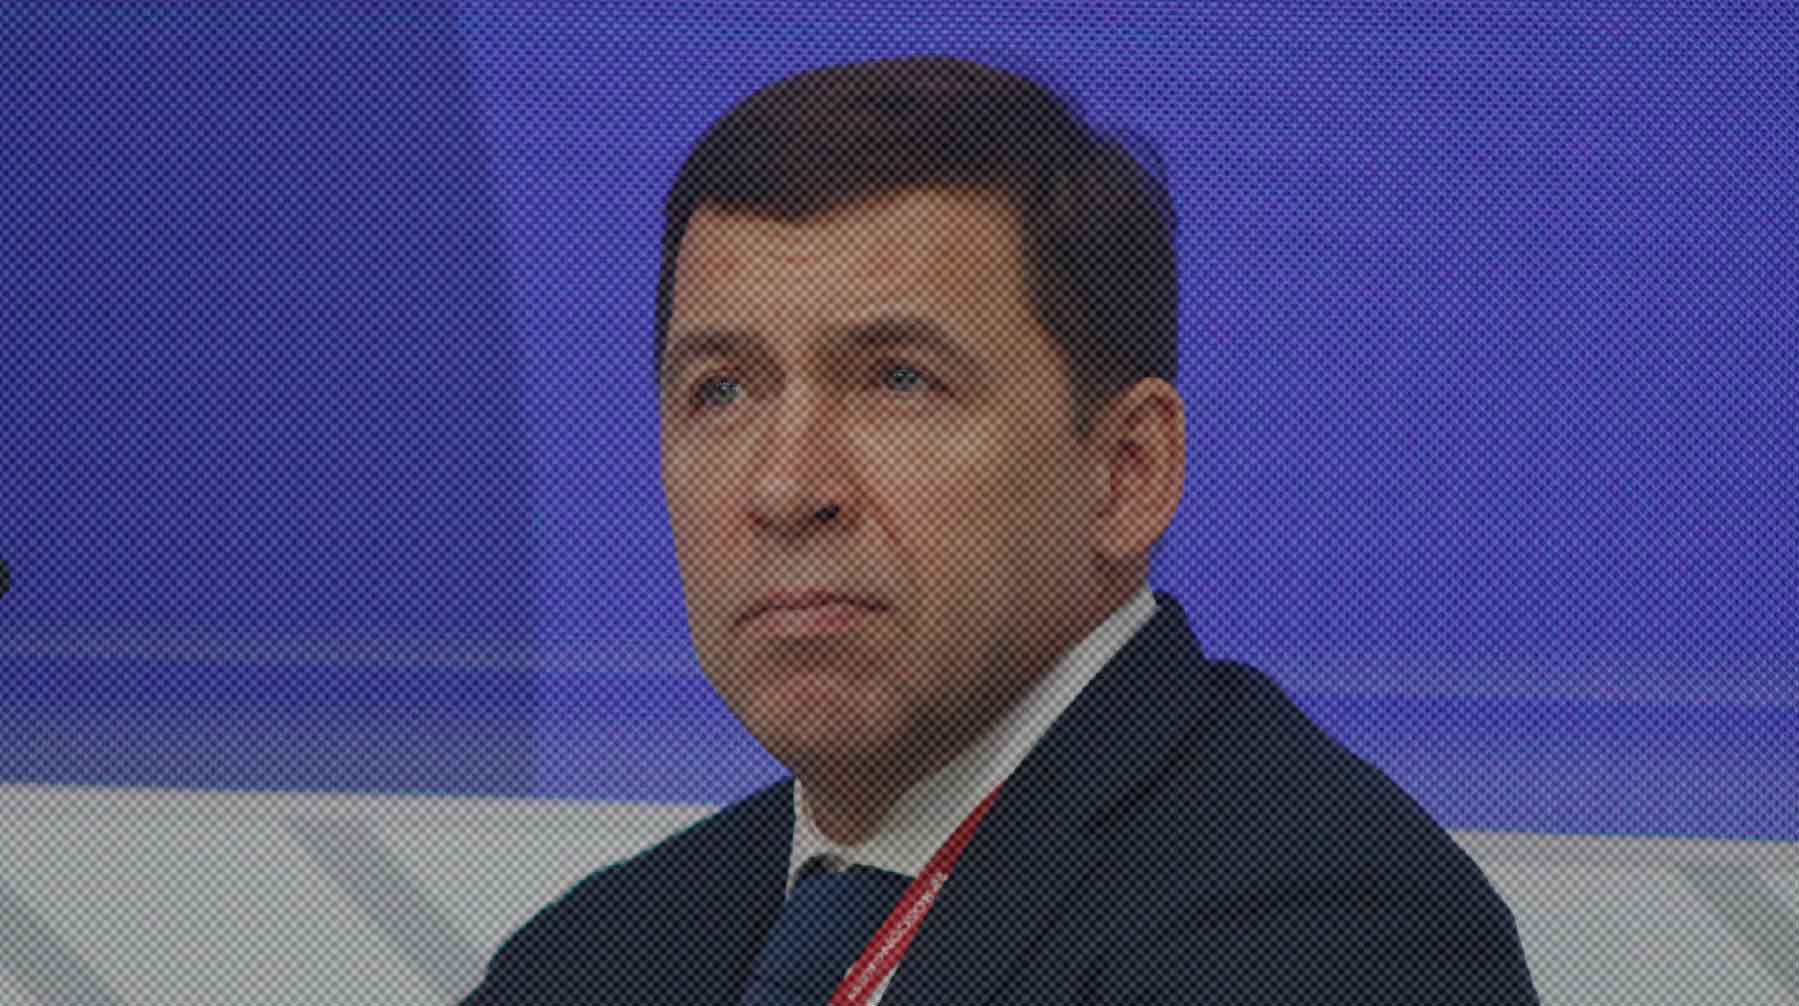 Dailystorm - Губернатор Свердловской области Куйвашев заявил, что задержанный Ройзман заслуживает справедливости и уважения